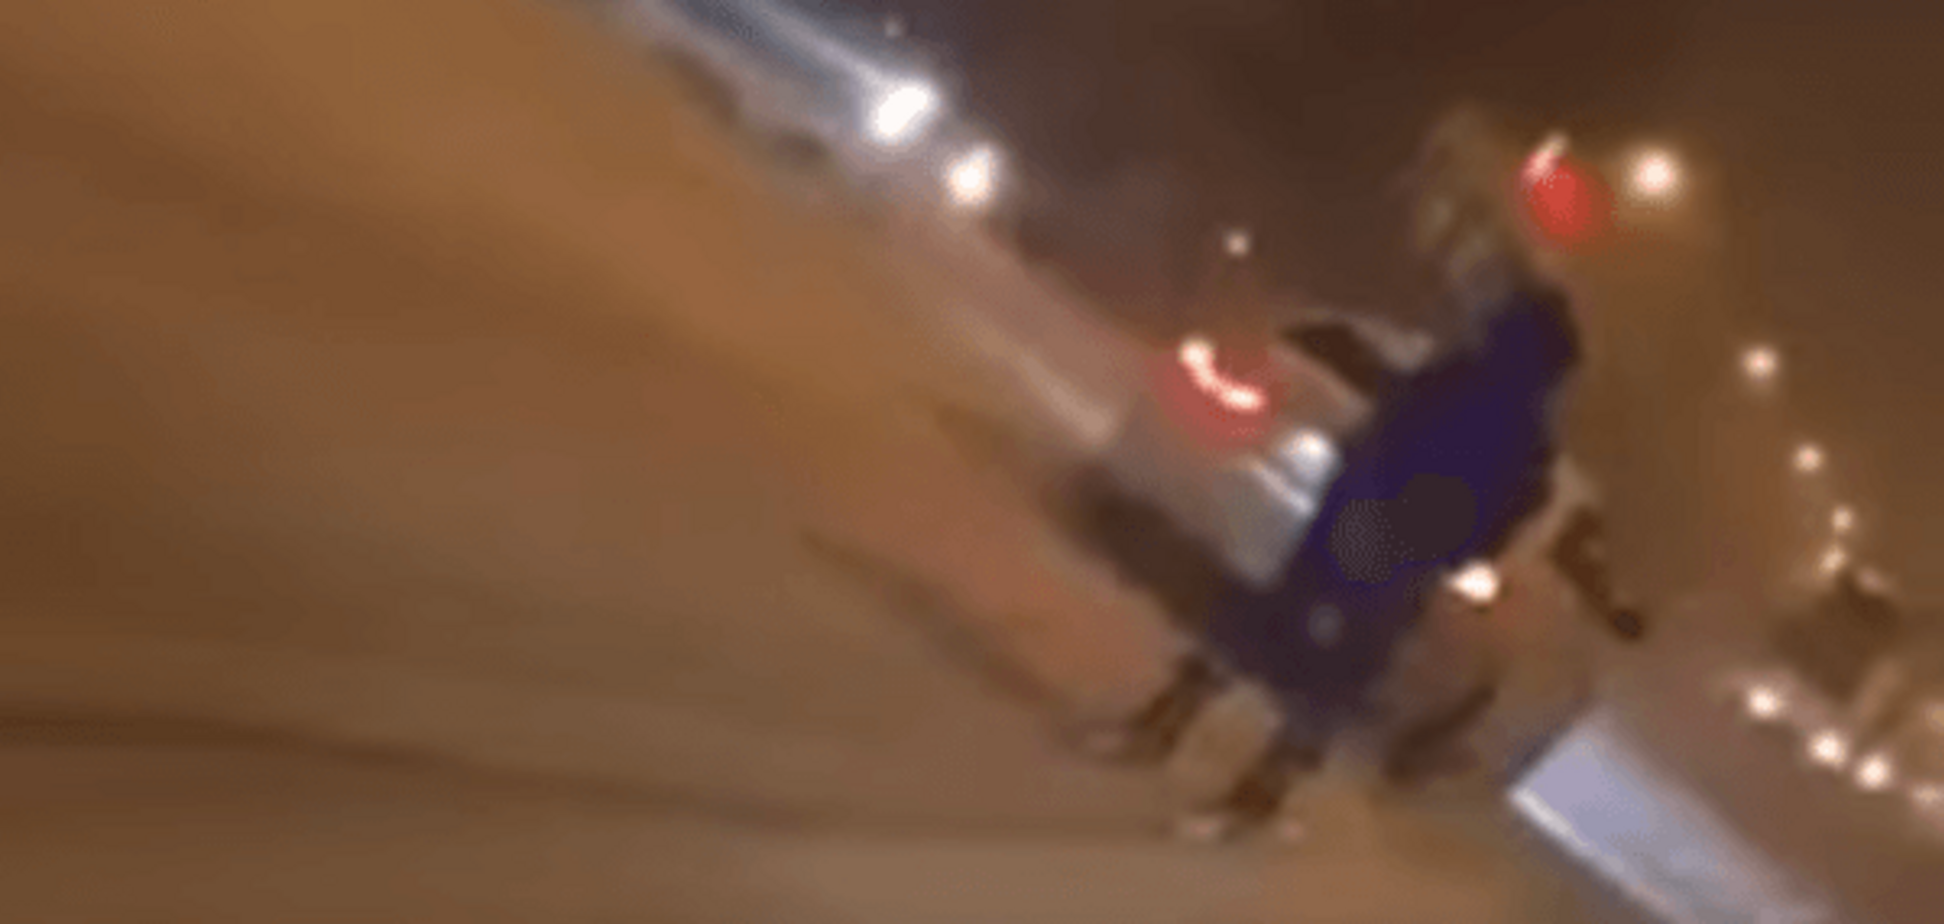 'ДНР'-екстрім: у центрі Донецька помітили лижника, що мчить за автомобілем. Відеофакт